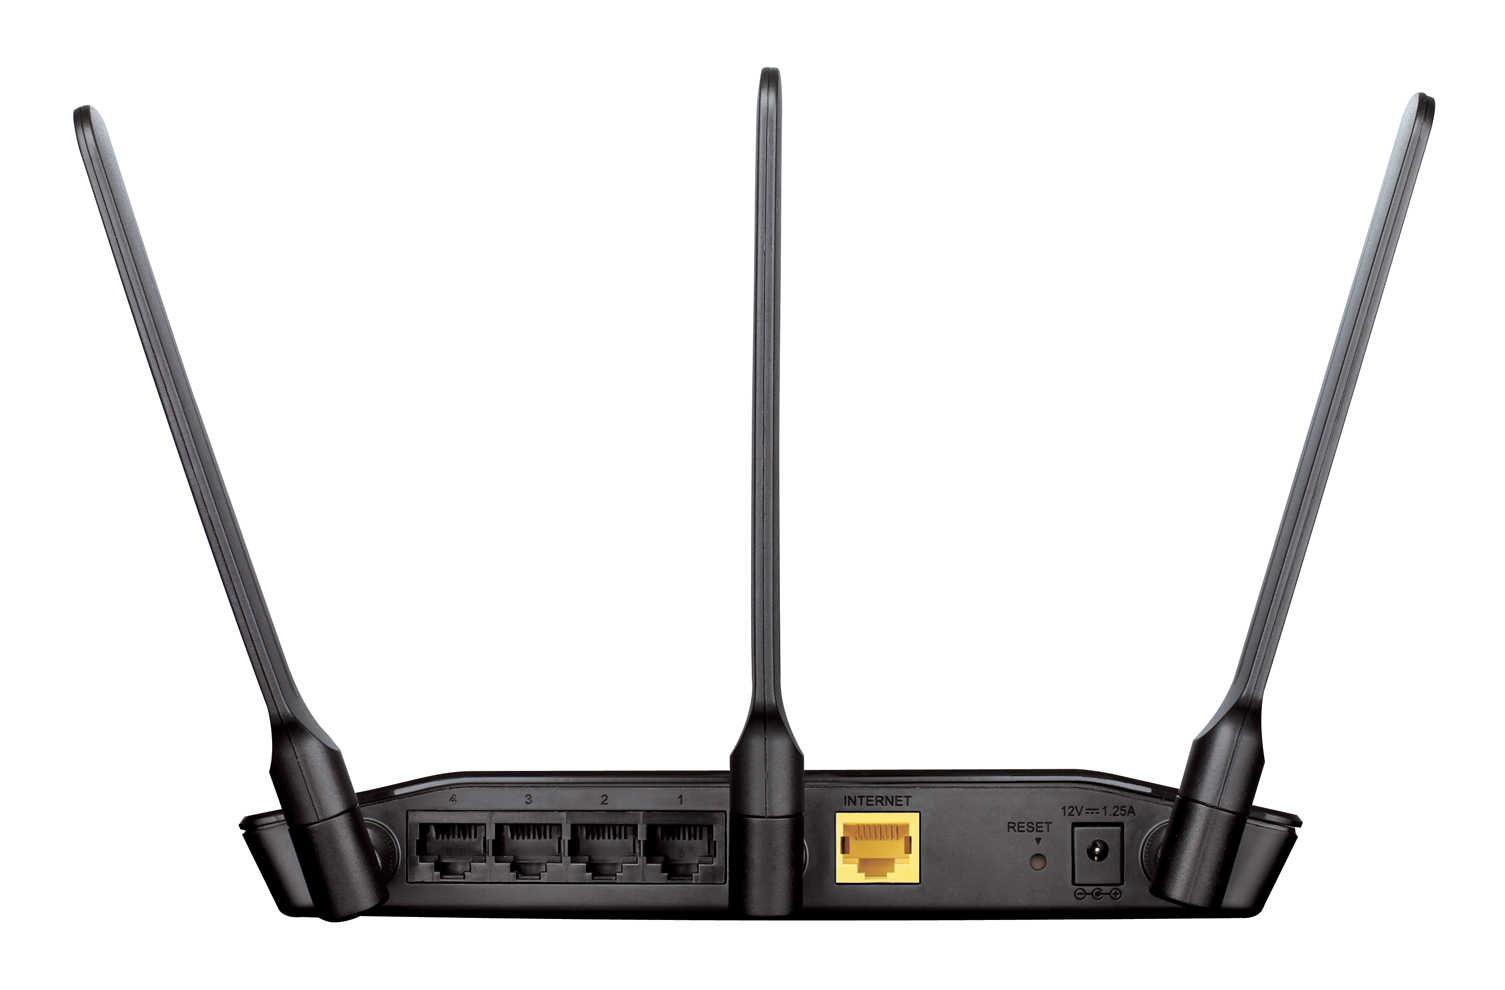 【史萊姆的家】D-Link友訊 DIR-619L  300Mbps無線寬頻路由器